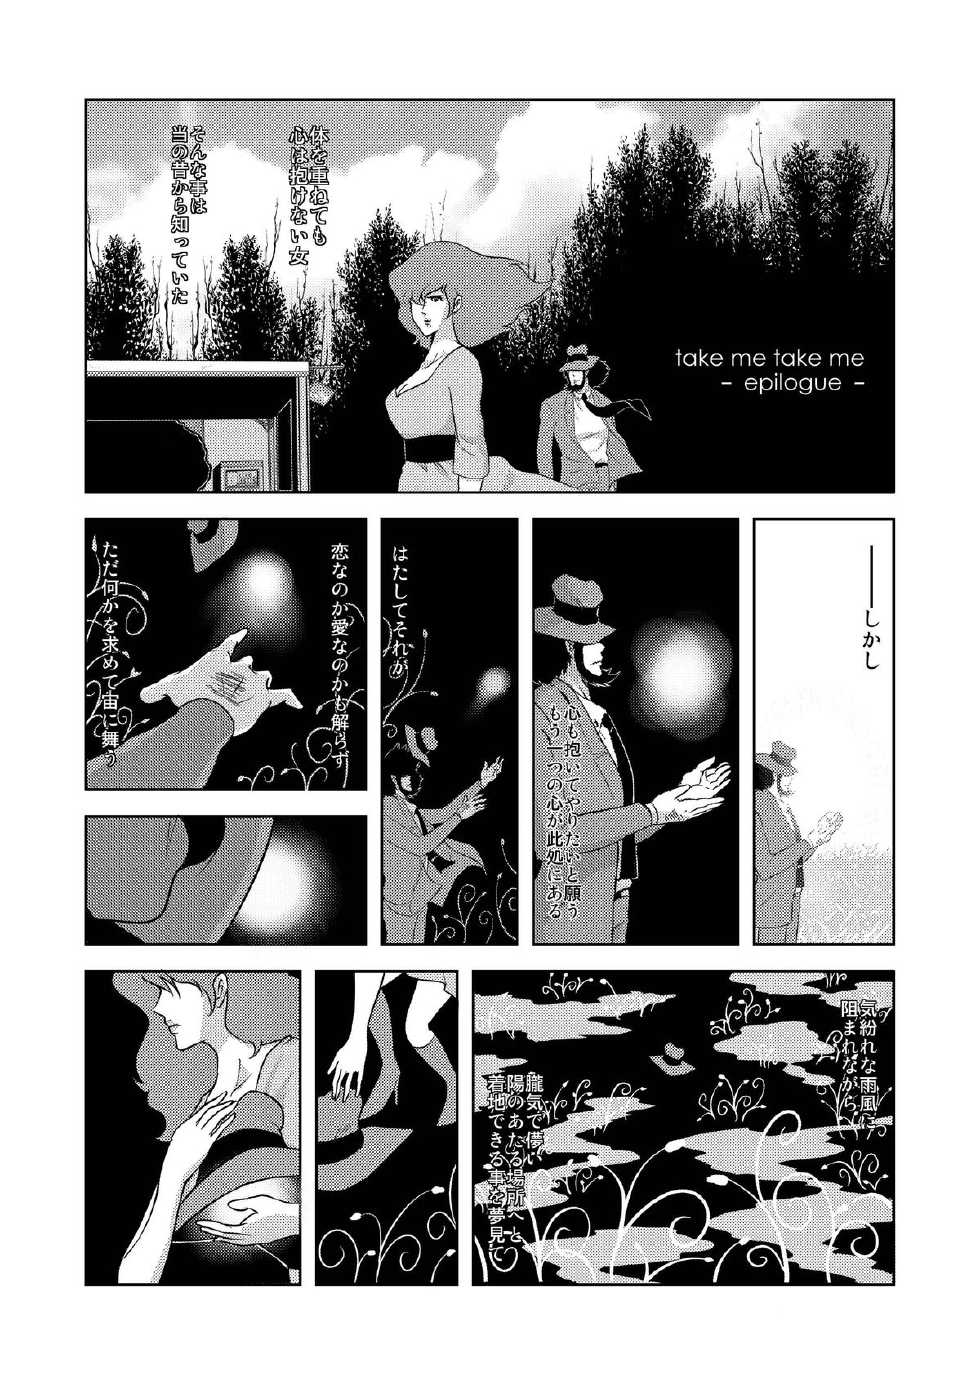 [studio187] take me take me (Lupin III) [Digital] - Page 31